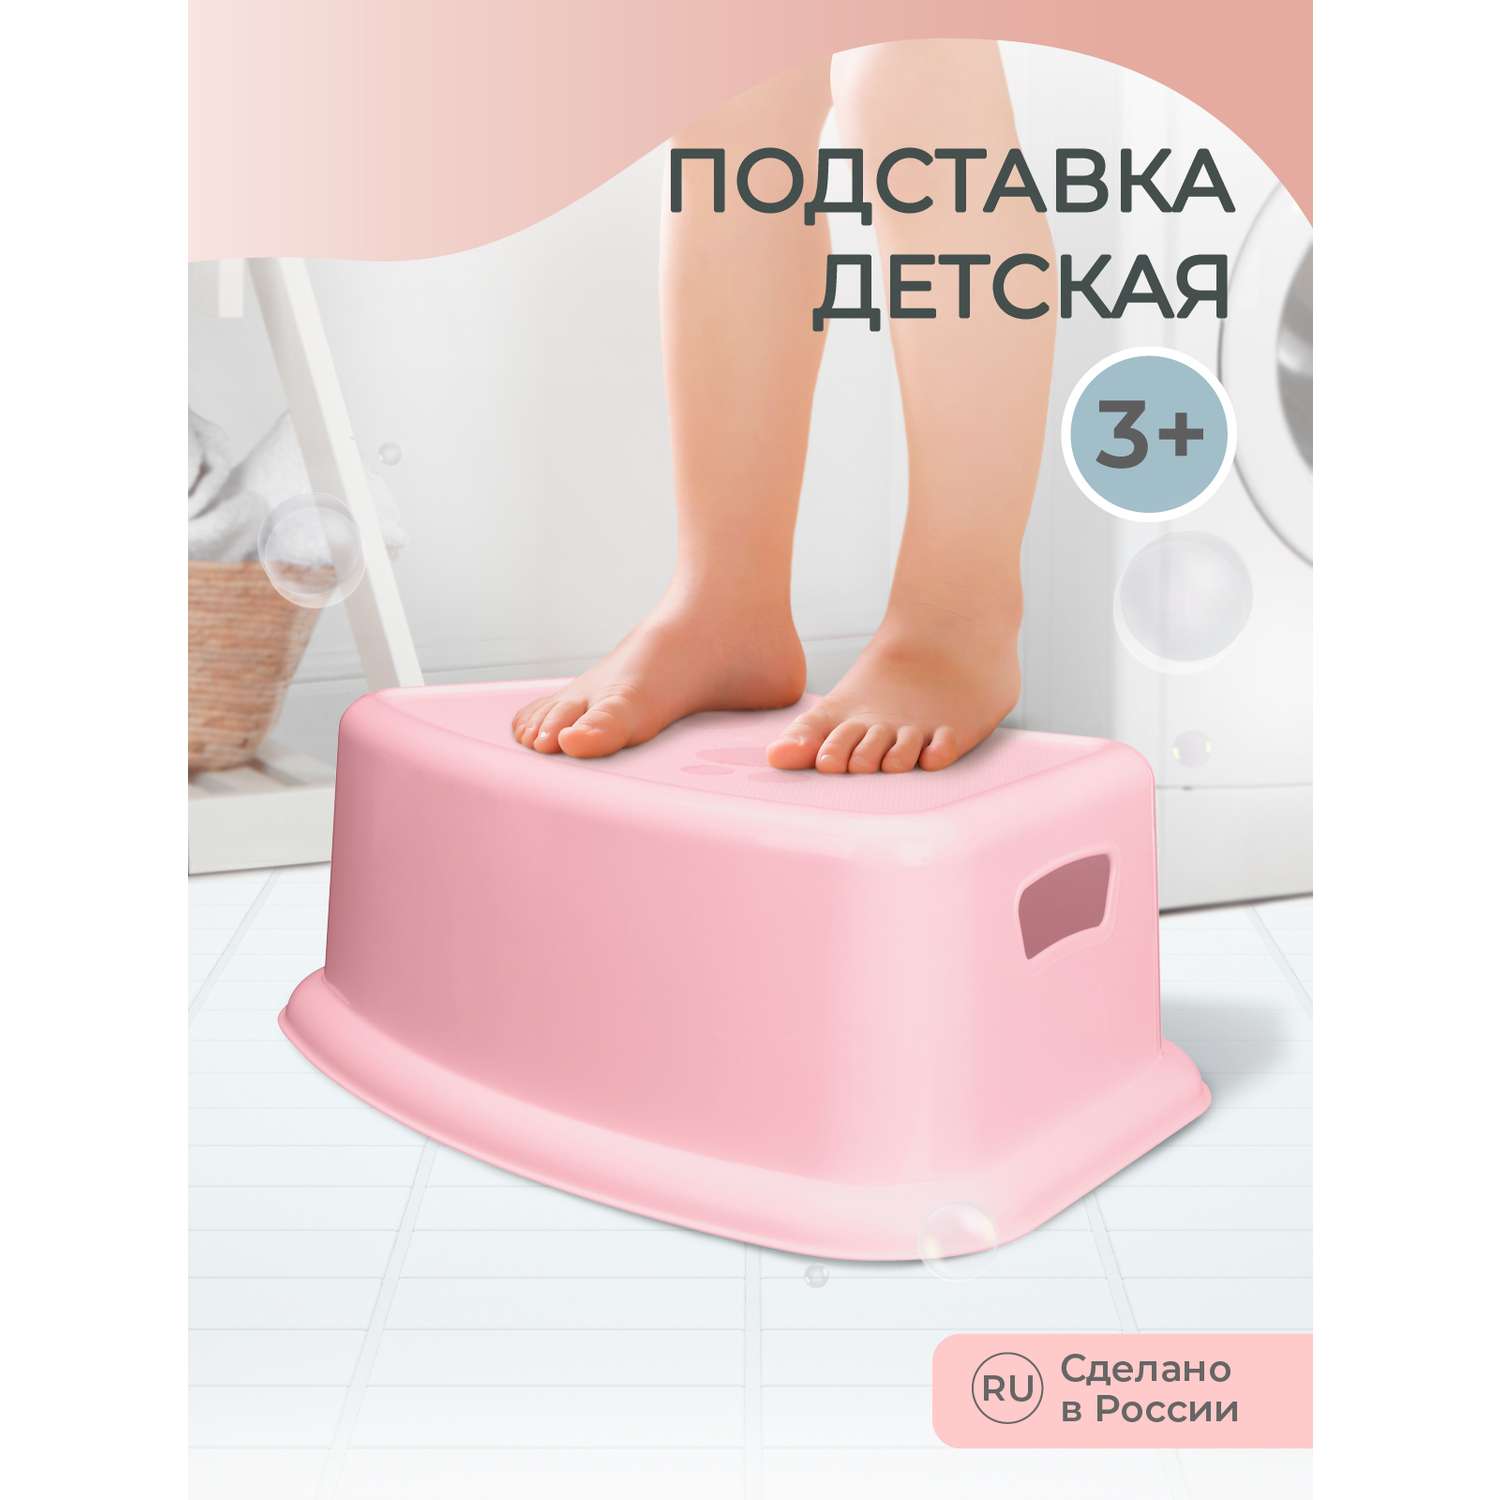 Подставка под ноги Пластишка детская розовый - фото 1